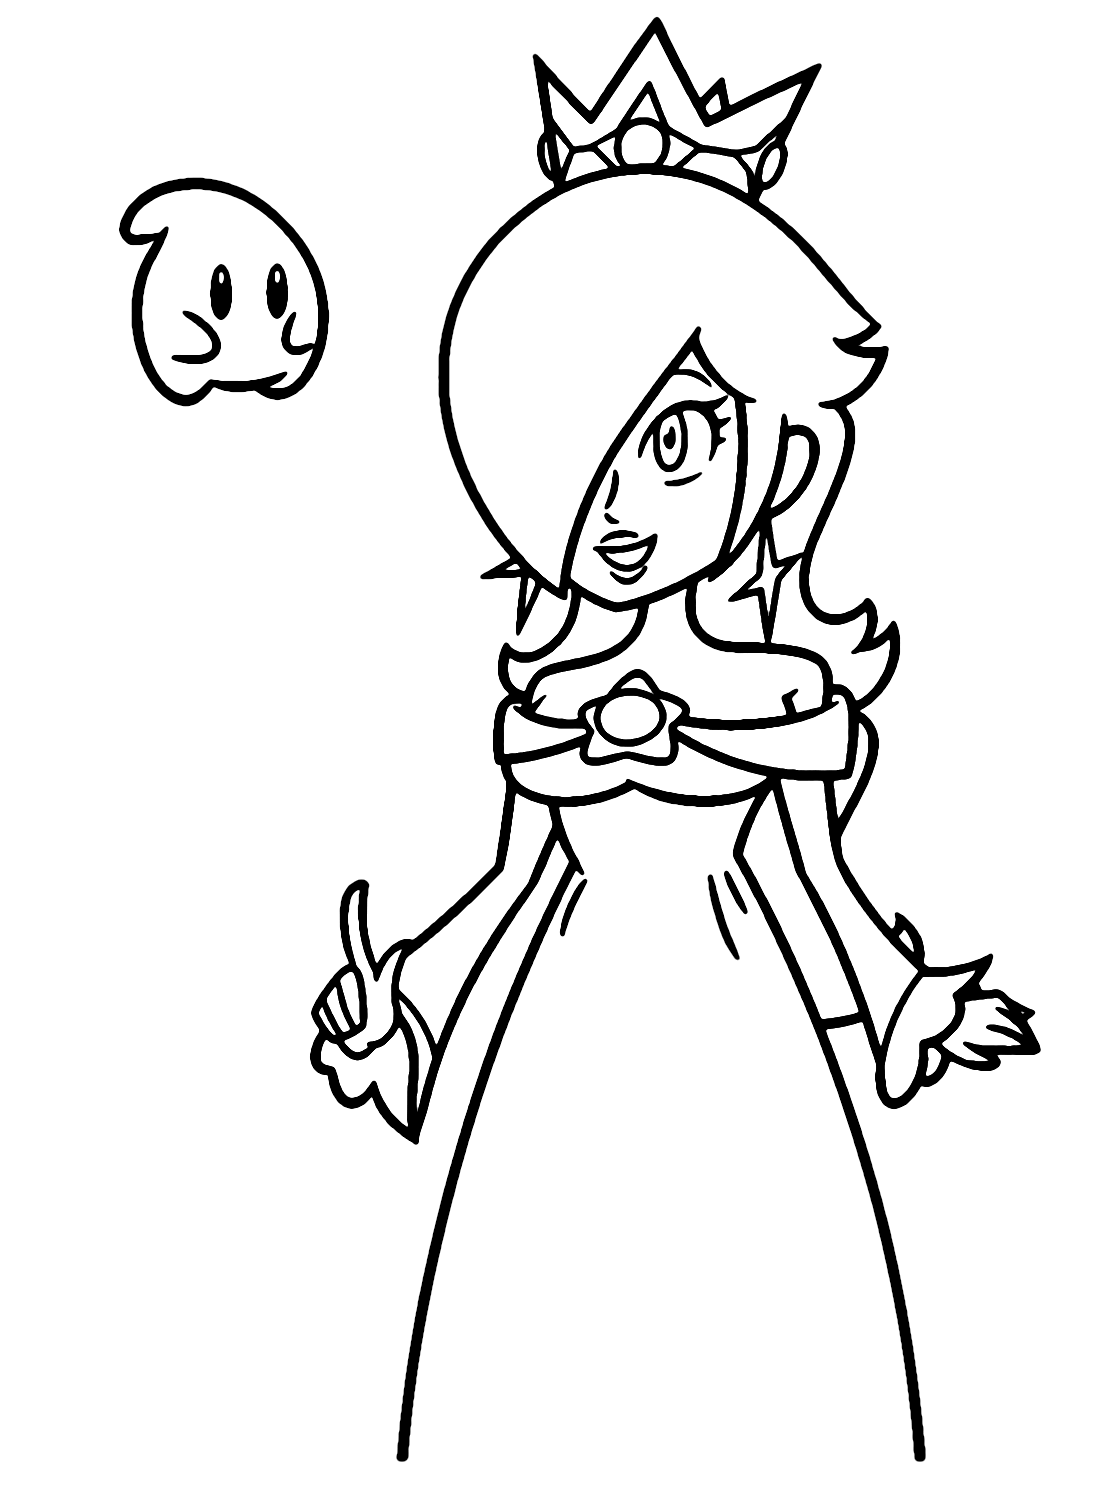 Rosalina in Mario Bros Coloring Page